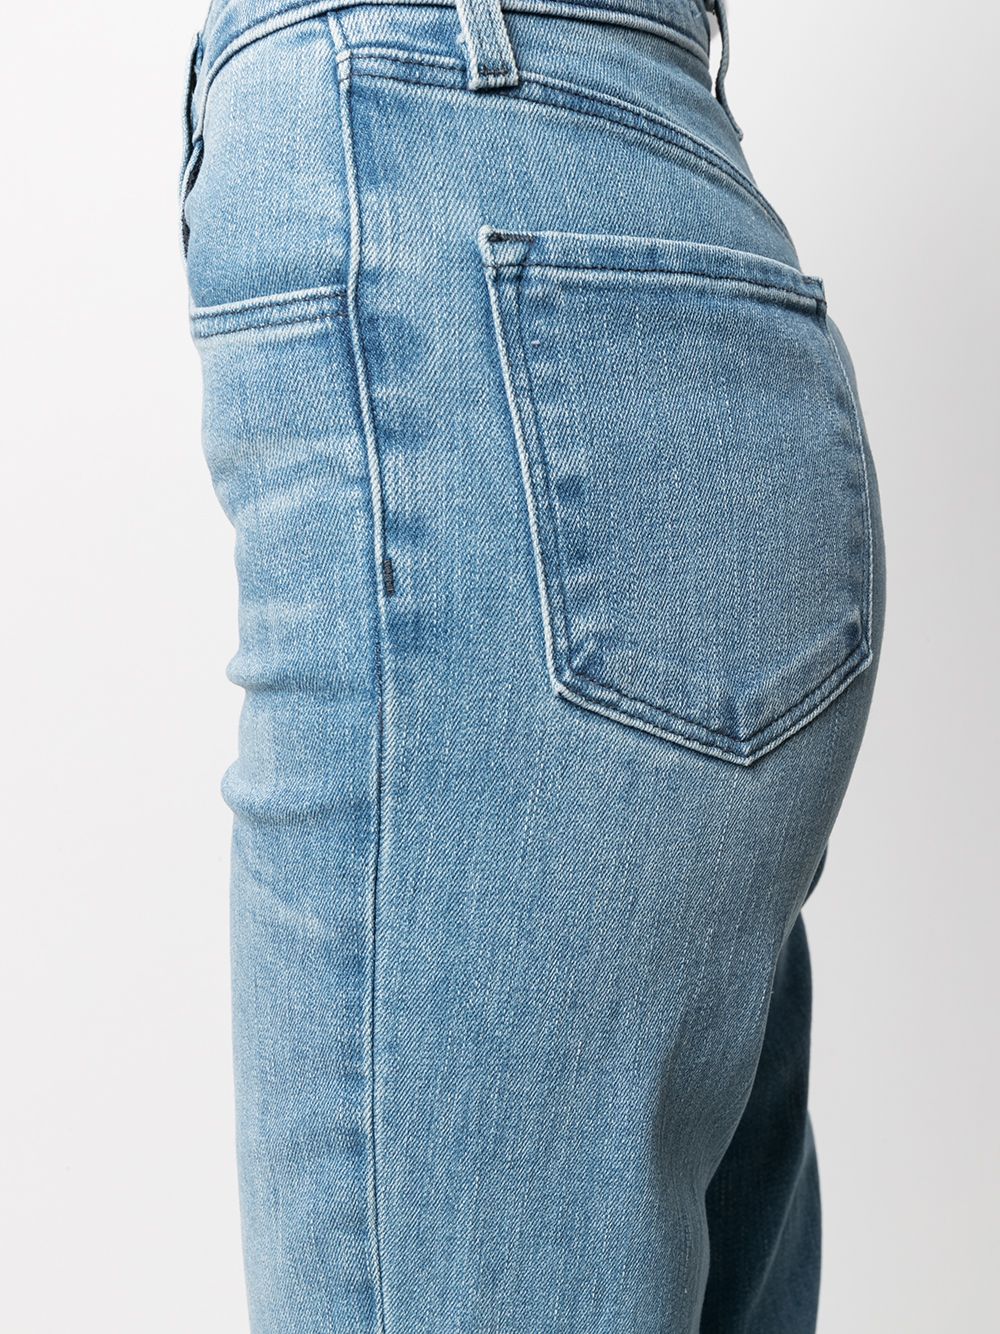 фото J brand укороченные джинсы